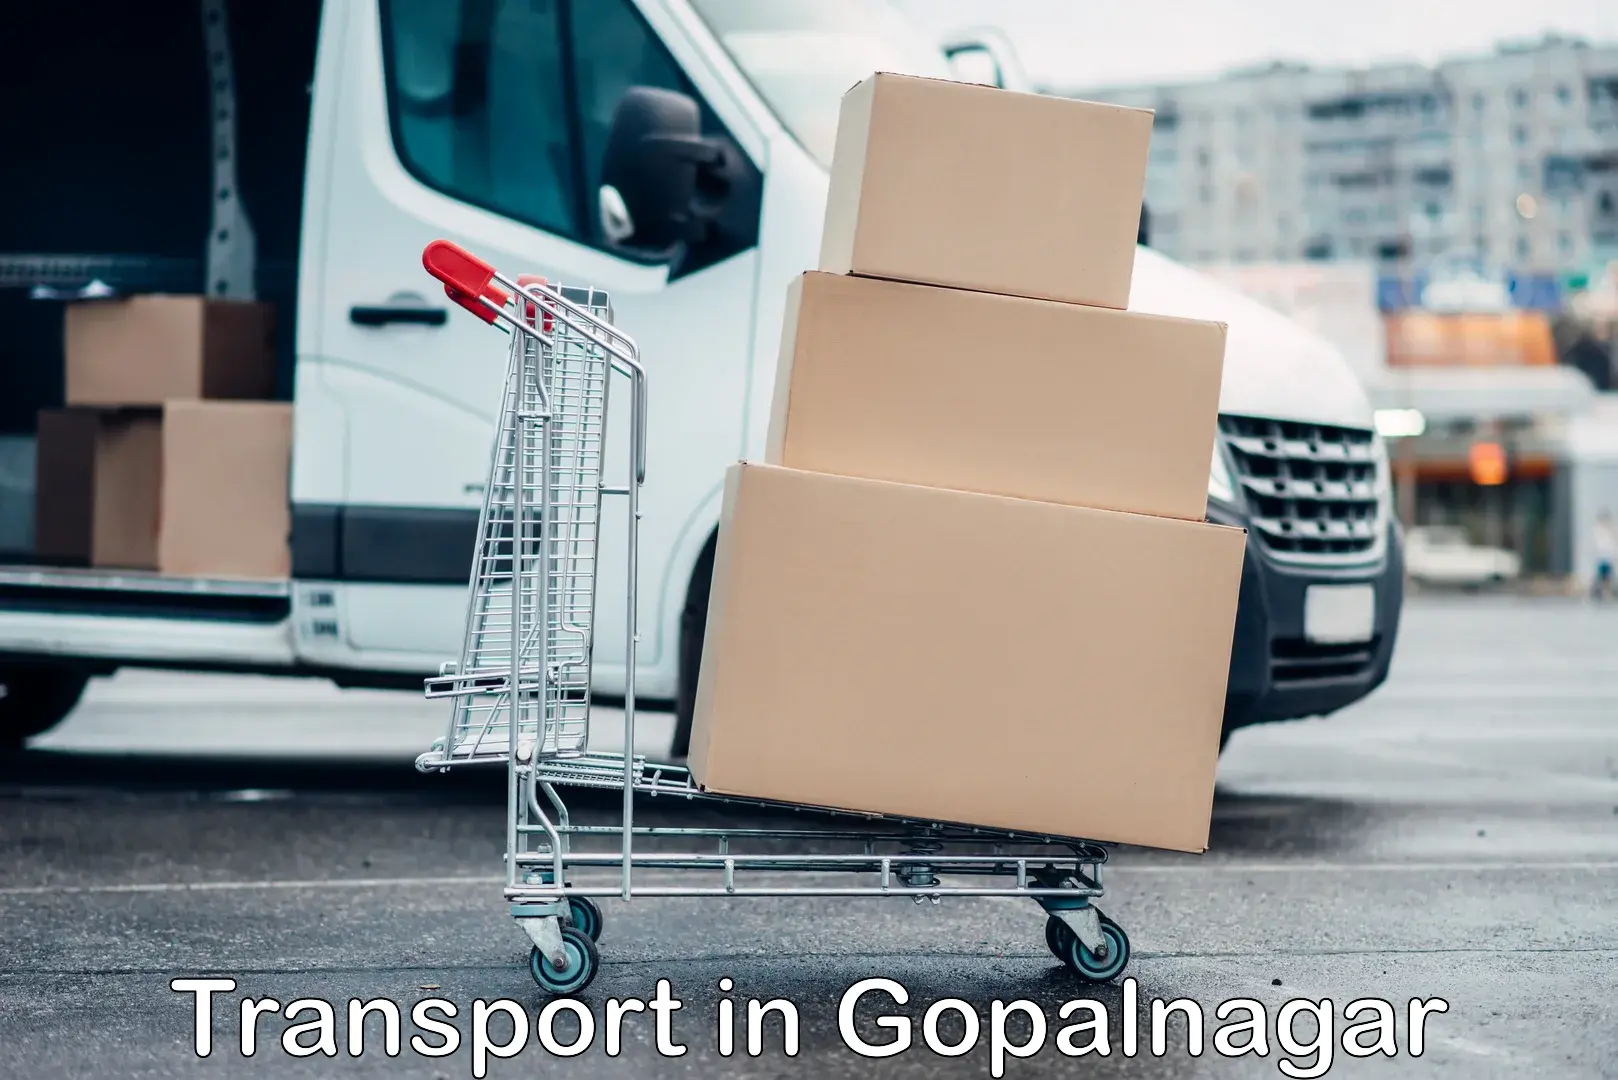 Land transport services in Gopalnagar